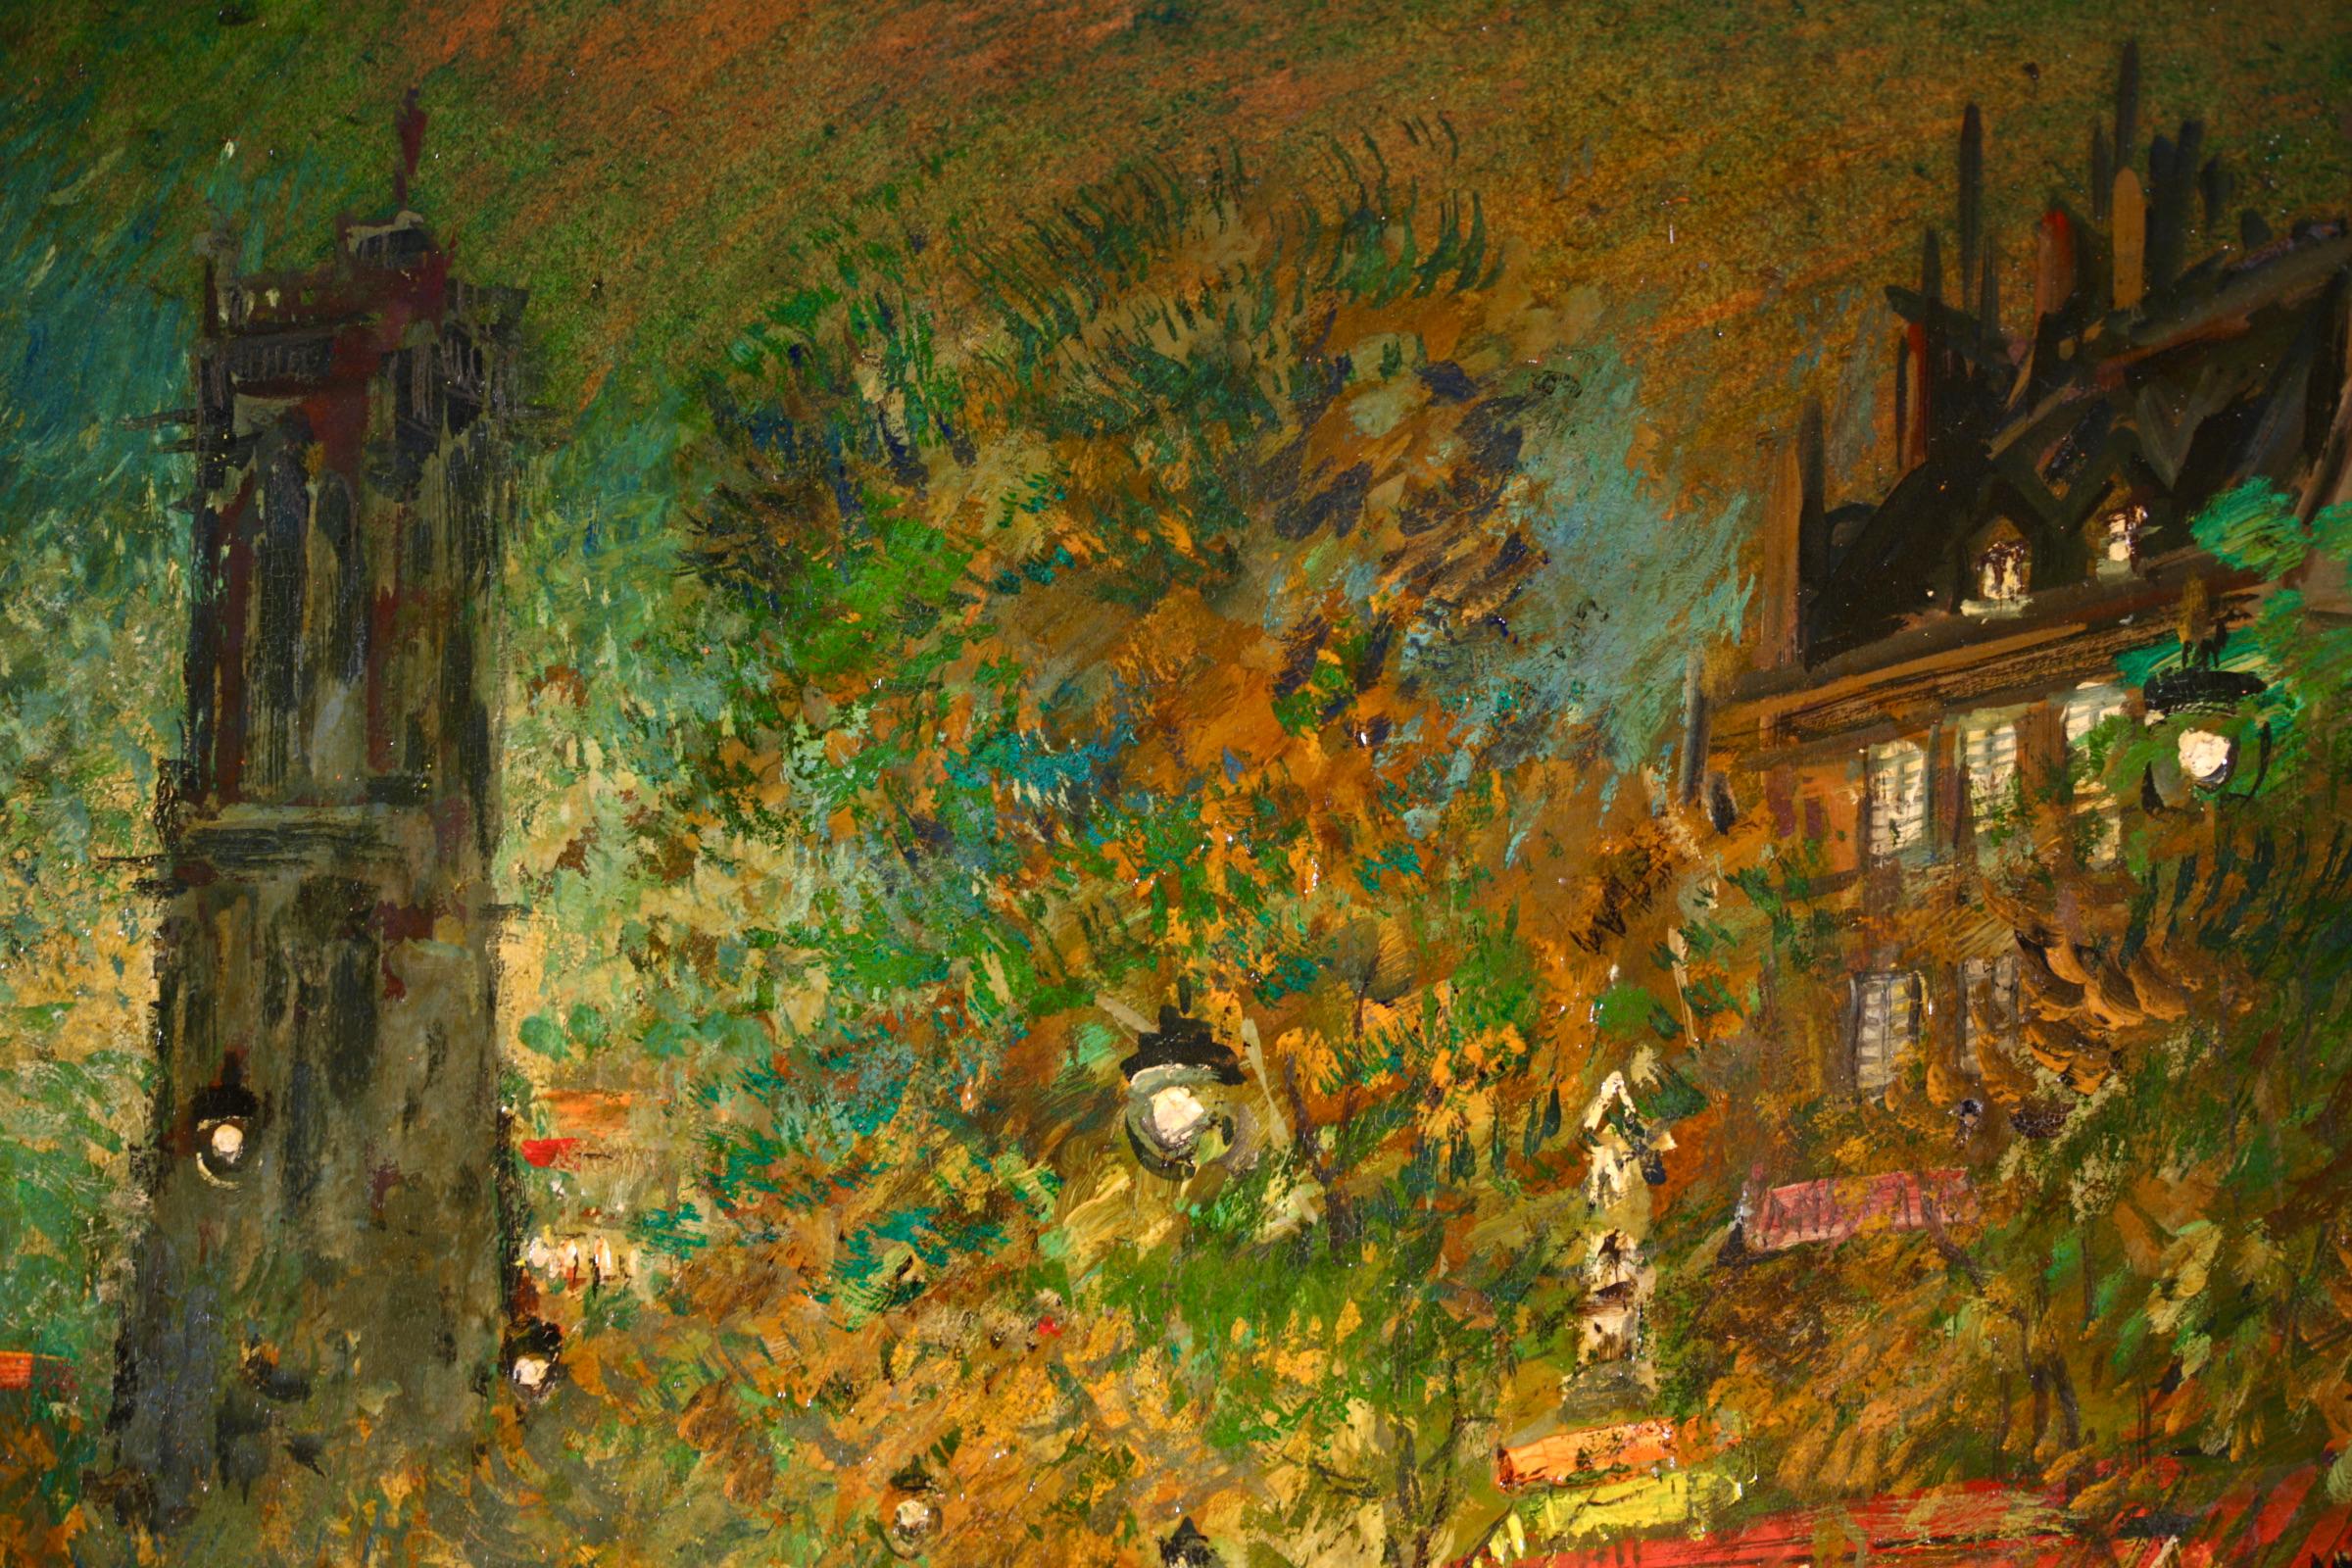 Signiertes und betiteltes Ölgemälde auf Karton des in Russland geborenen impressionistischen Malers Konstantin Alekseevich Korovin. Das Werk zeigt eine nächtliche Ansicht des Saint-Jacques-Turms in Paris, Frankreich. Die Straße wird von